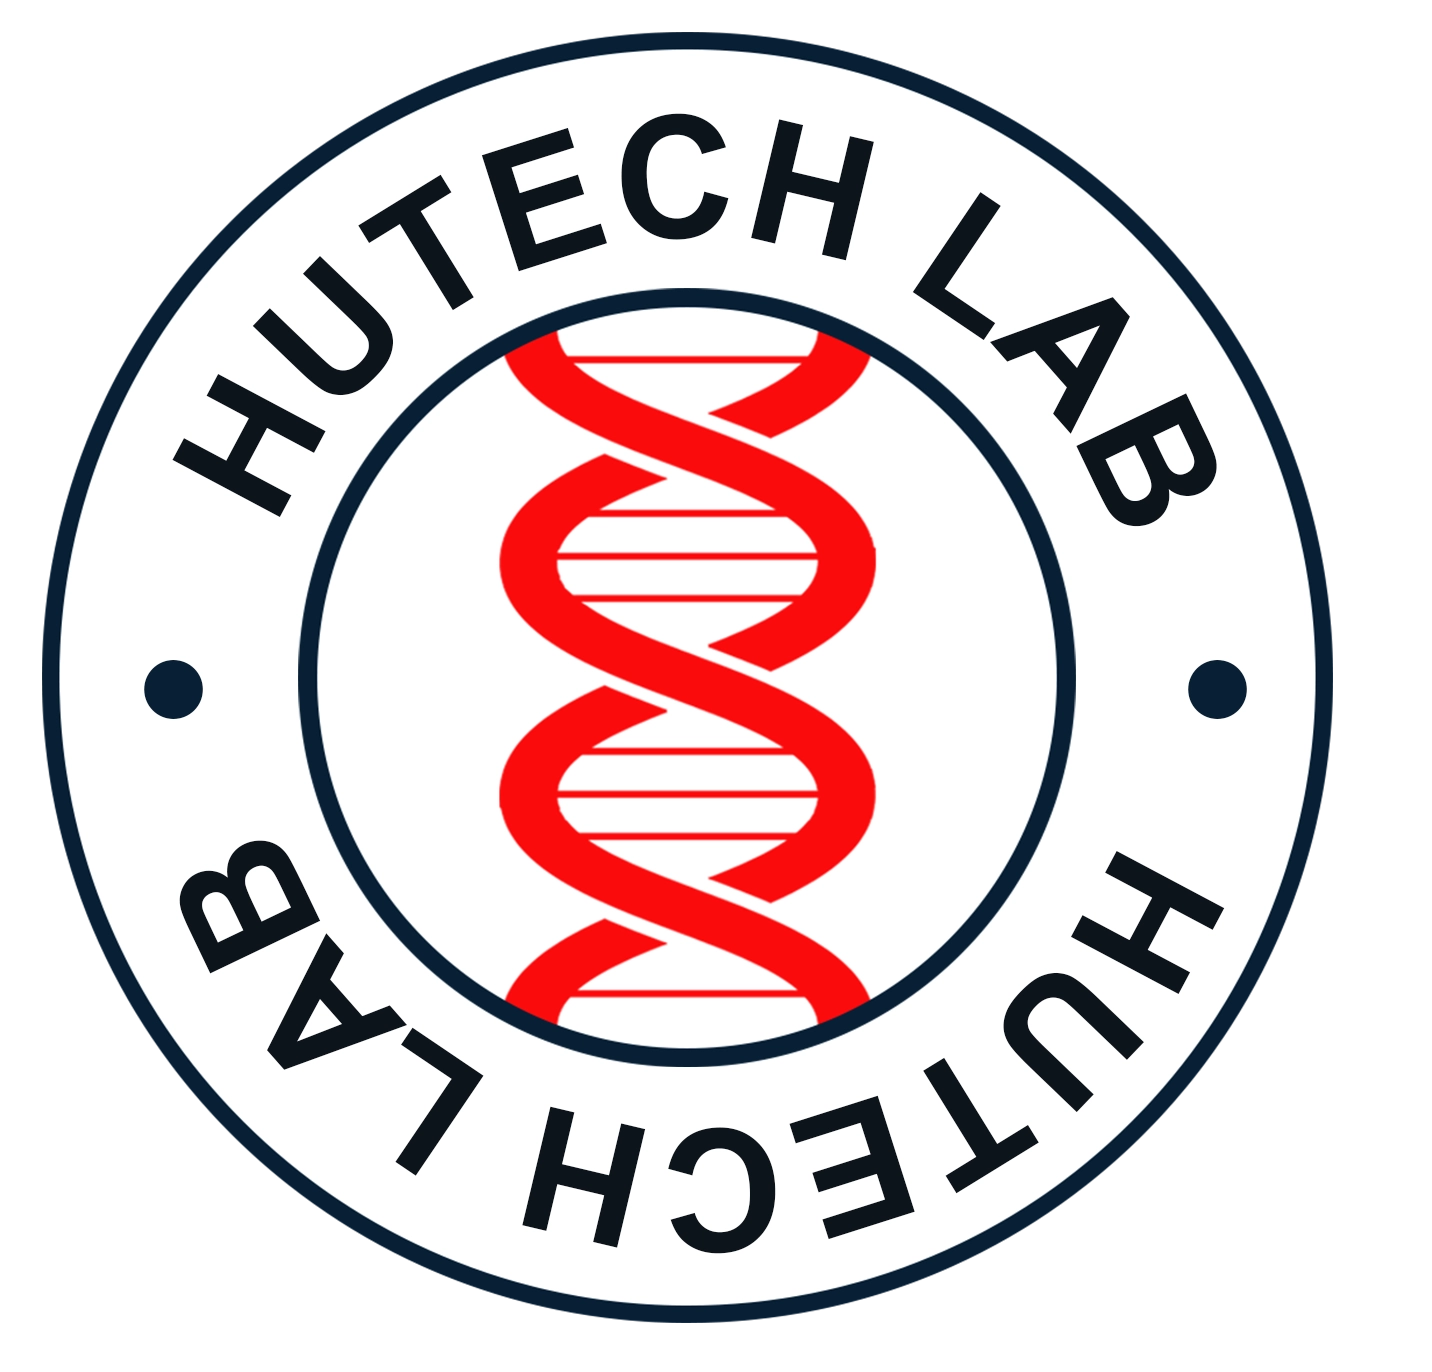 Hutech Labs